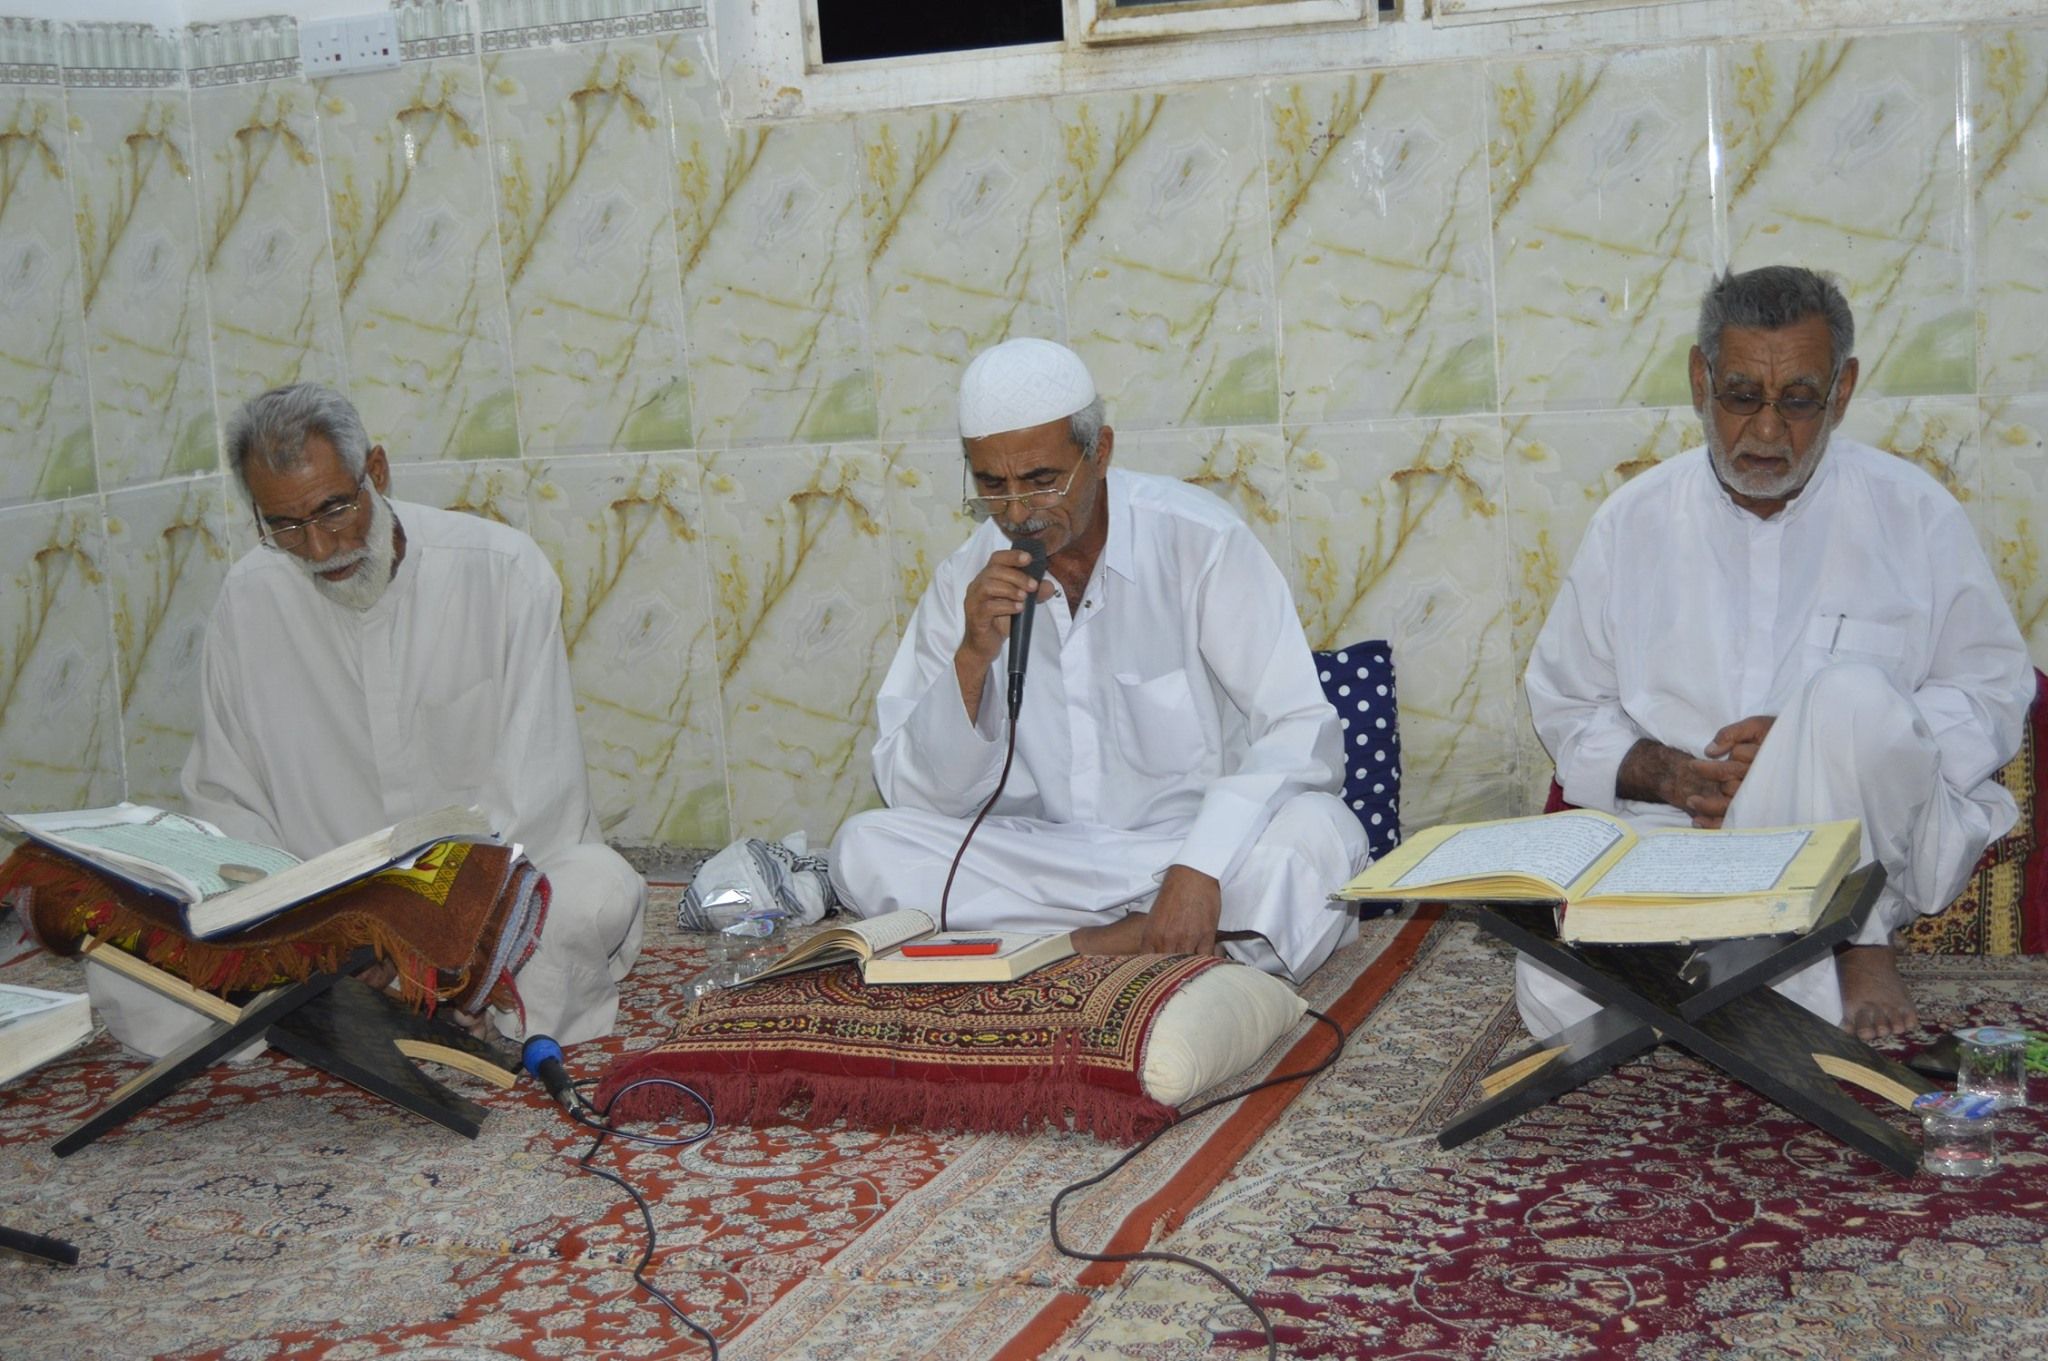 أكثر من (26) ختمة قرآنية رمضانية مُرتلة في مختلف المناطق التابعة لقضاء الهندية يفتتحها معهد القرآن الكريم / فرع الهندية التابع للعتبة العباسية المقدسة